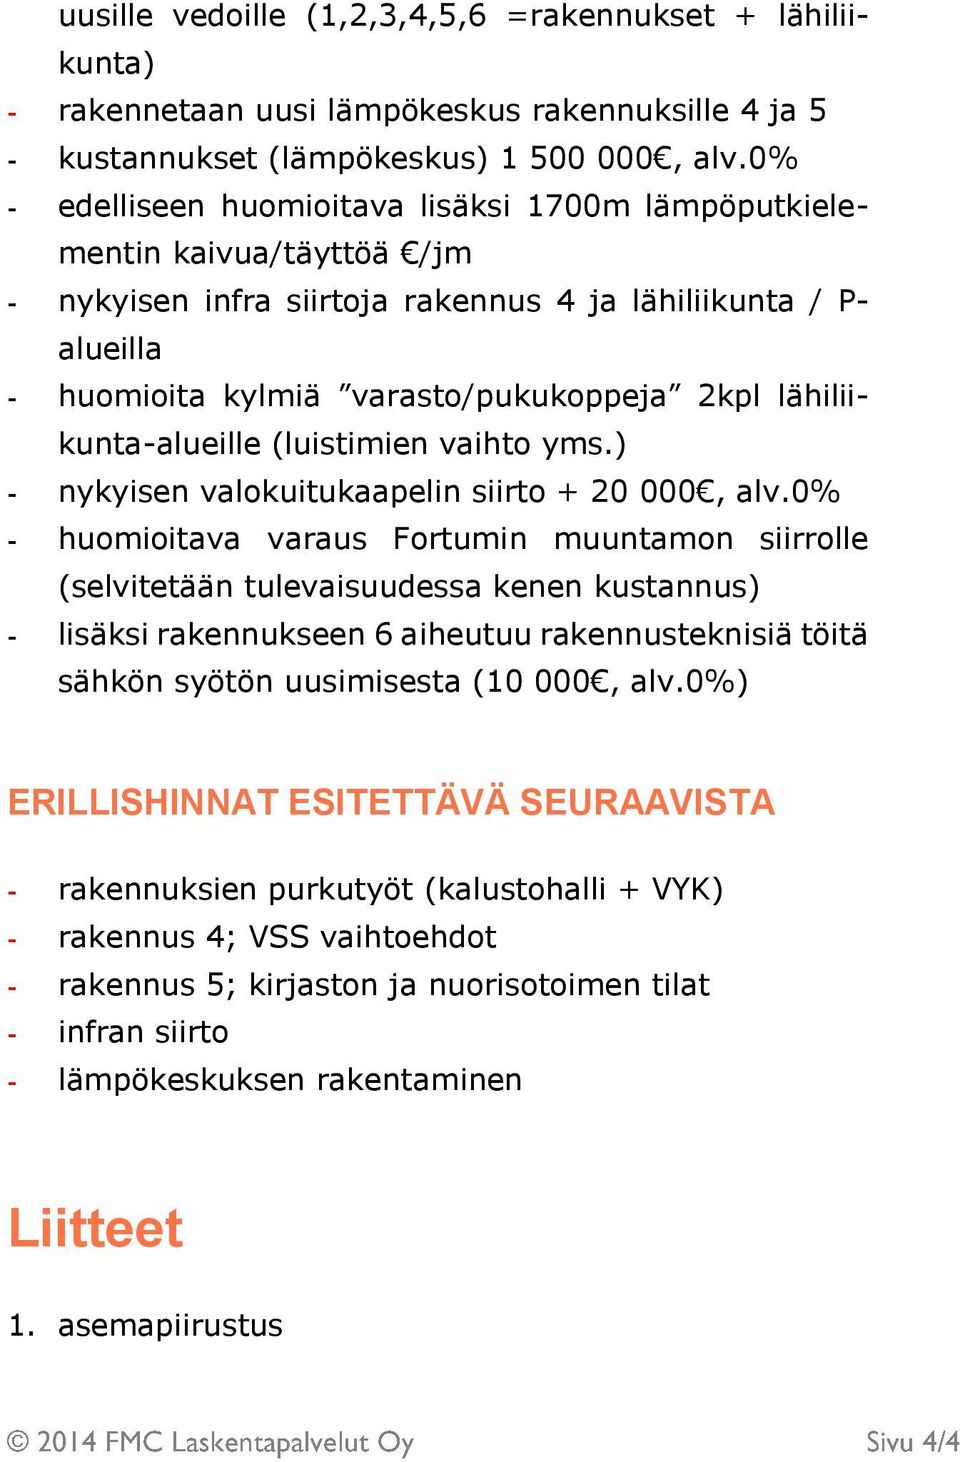 lähiliikunta-alueille (luistimien vaihto yms.) - nykyisen valokuitukaapelin siirto + 20 000, alv.